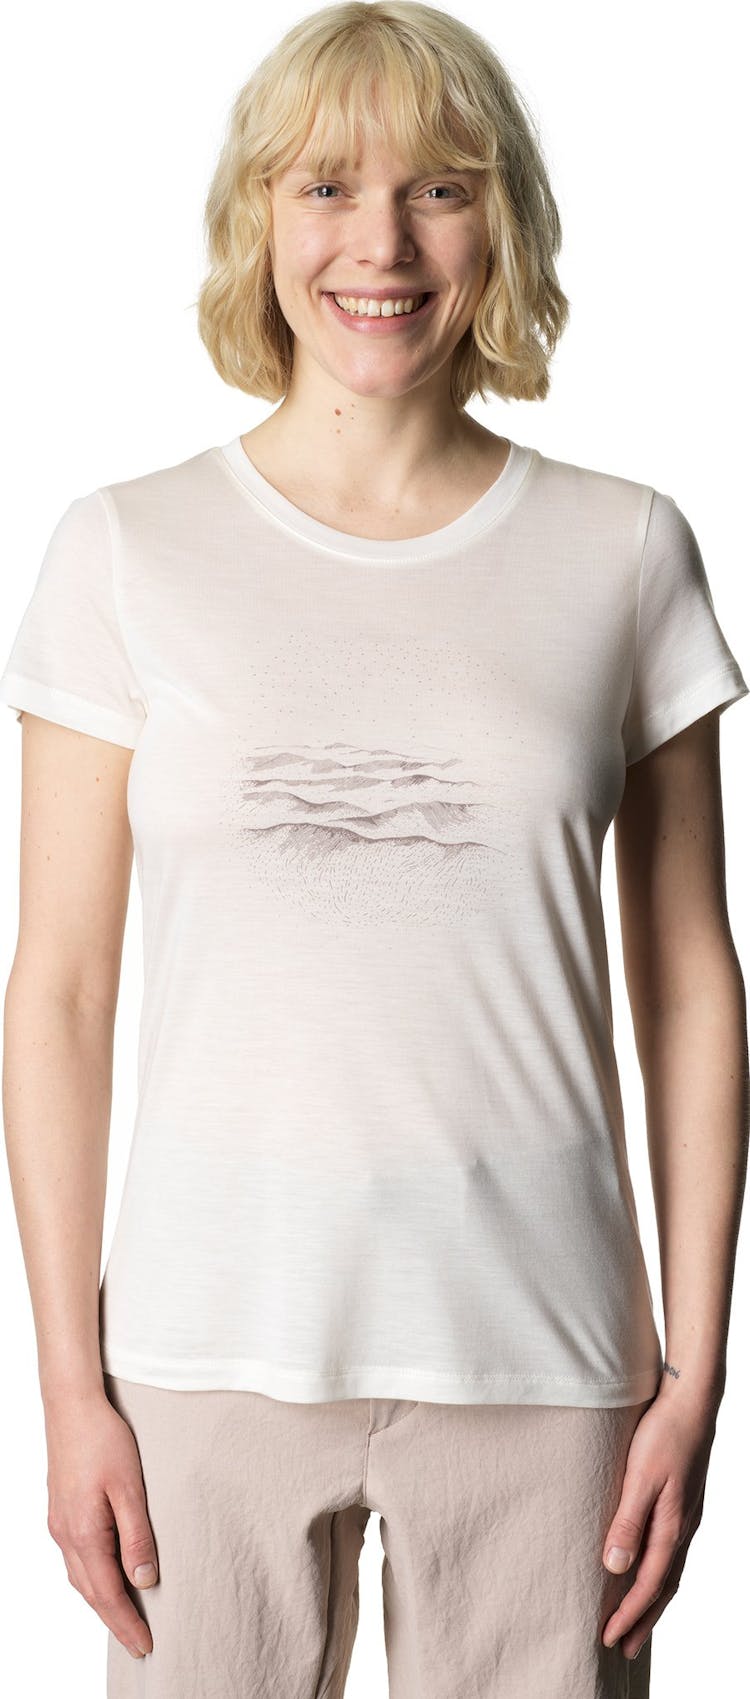 Numéro de l'image de la galerie de produits 5 pour le produit T-shirt Tree Message - Femme